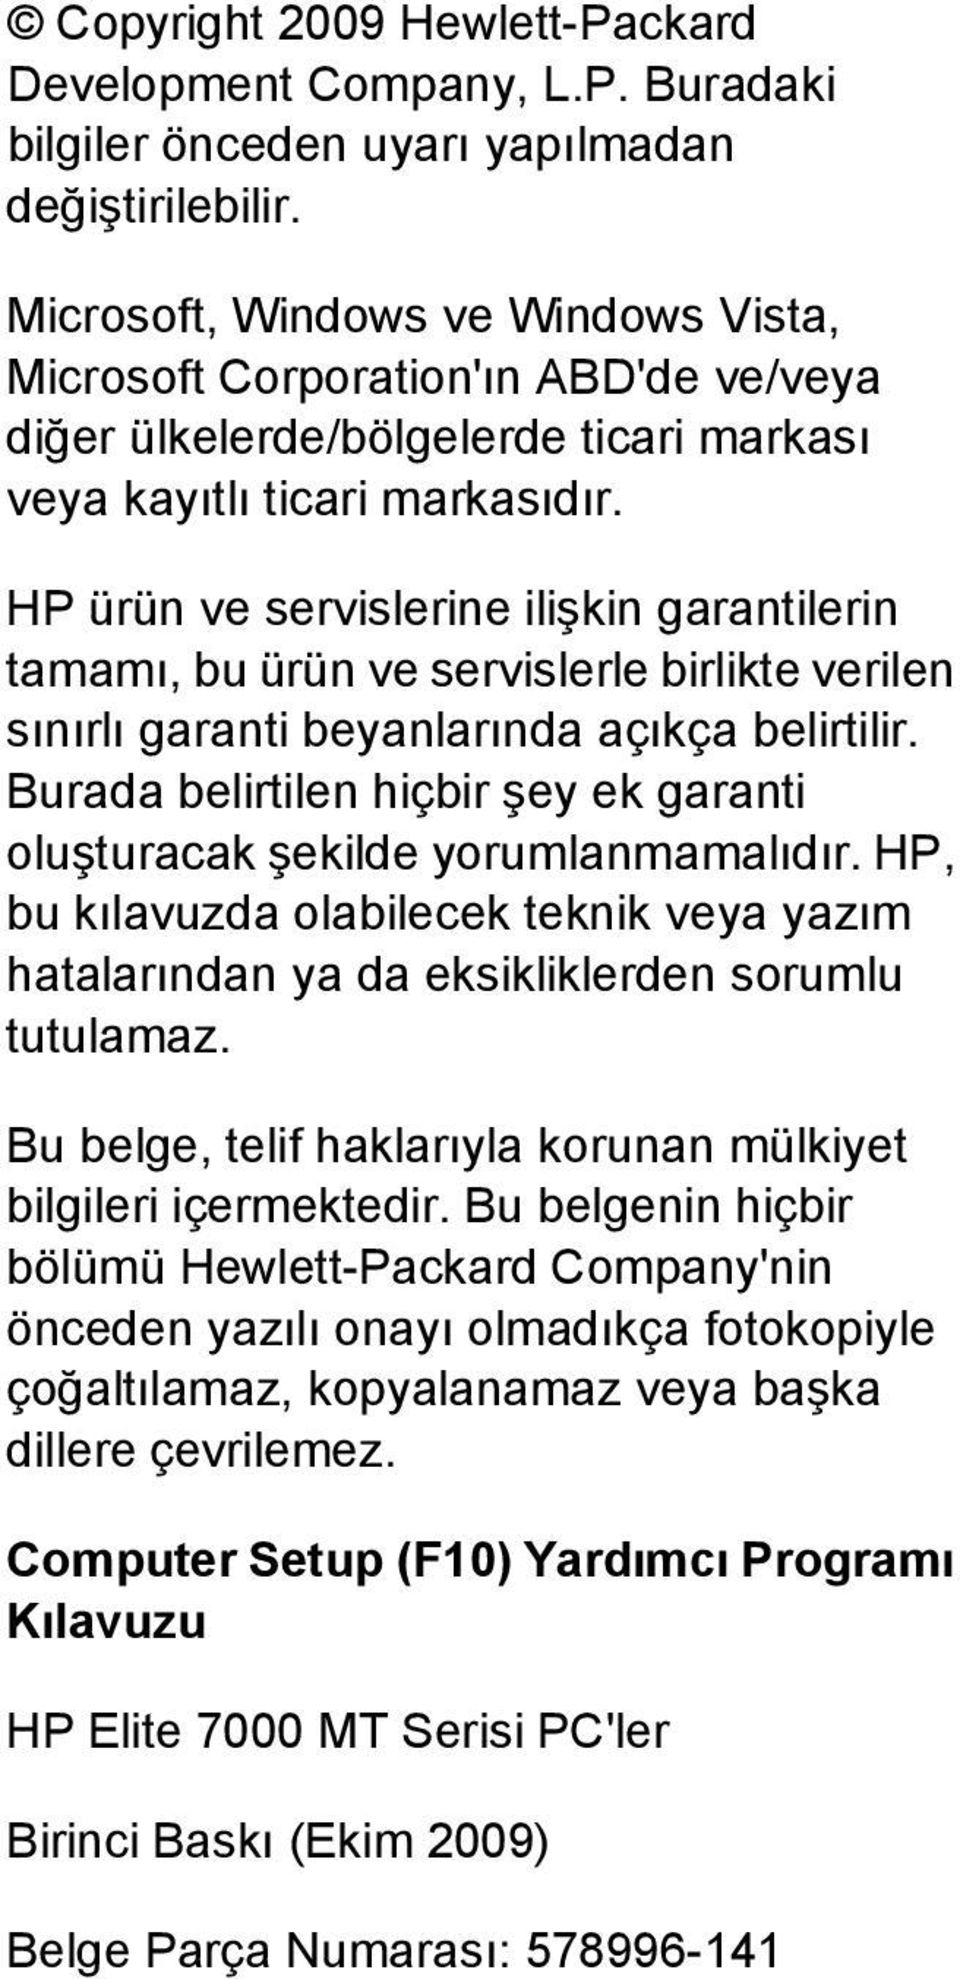 HP ürün ve servislerine ilişkin garantilerin tamamı, bu ürün ve servislerle birlikte verilen sınırlı garanti beyanlarında açıkça belirtilir.